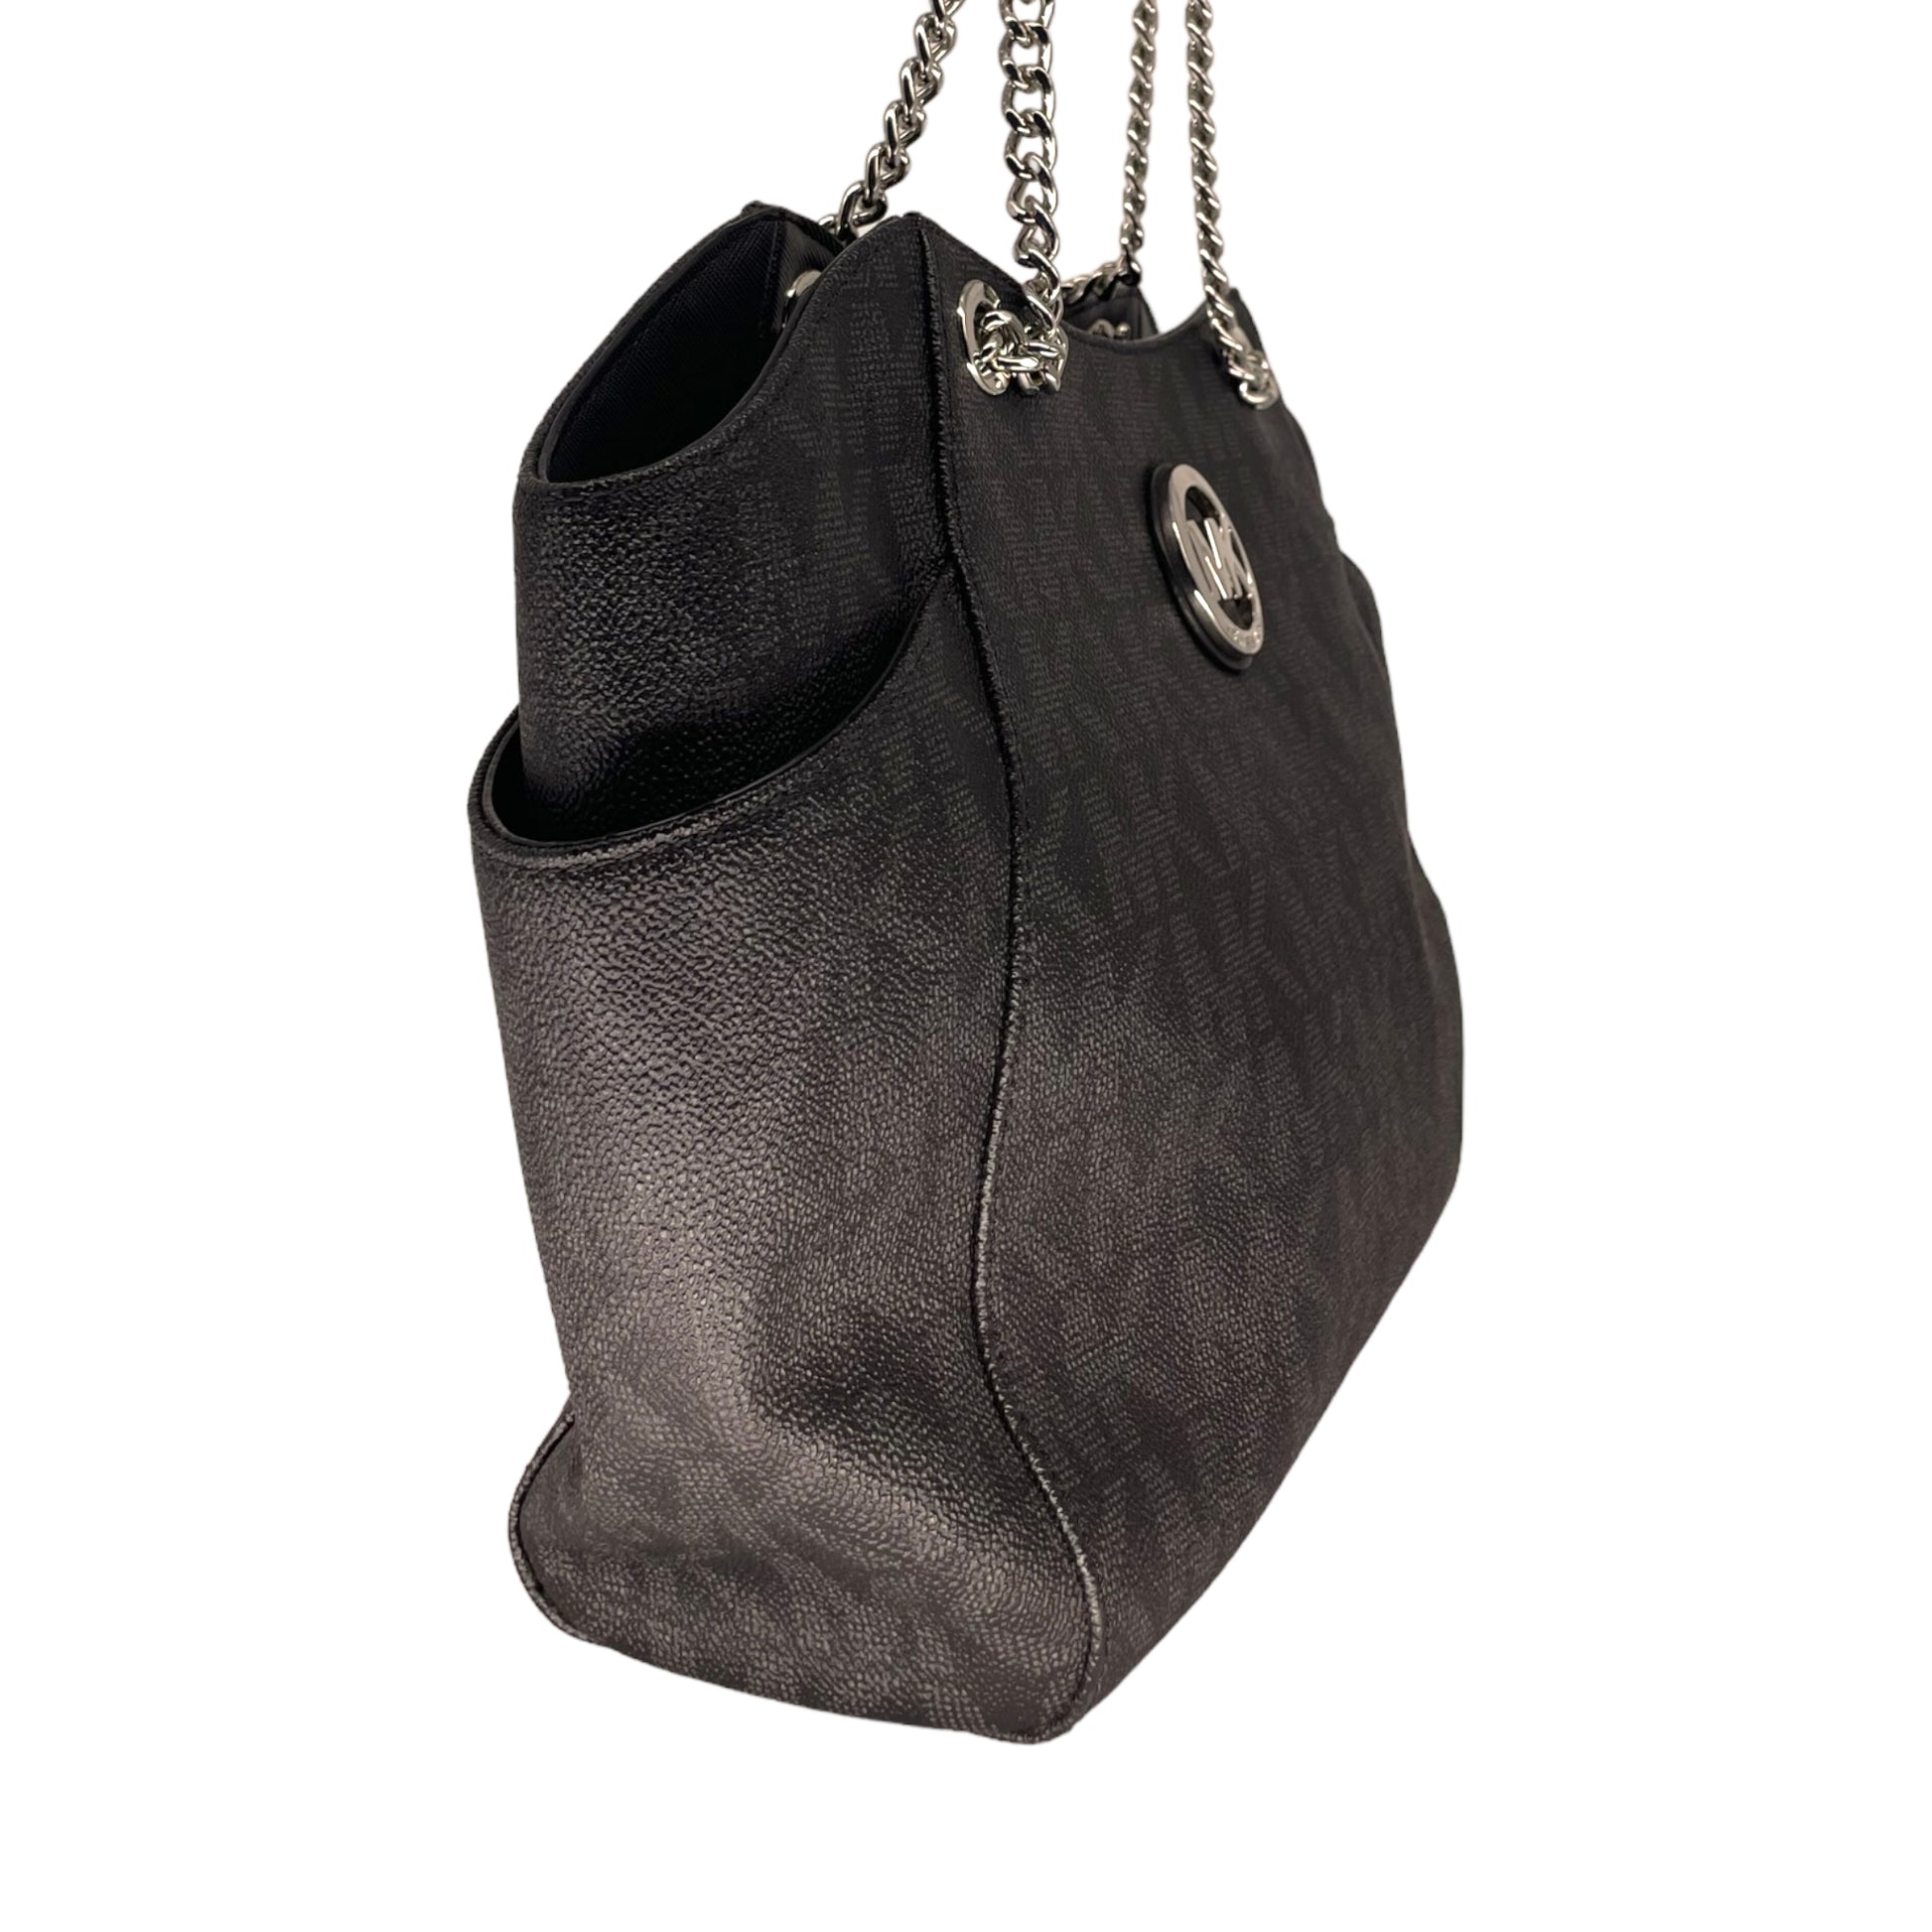 Michael Kors Jet Set Travel Large Chain Shoulder Tote Black Leather+Wallet